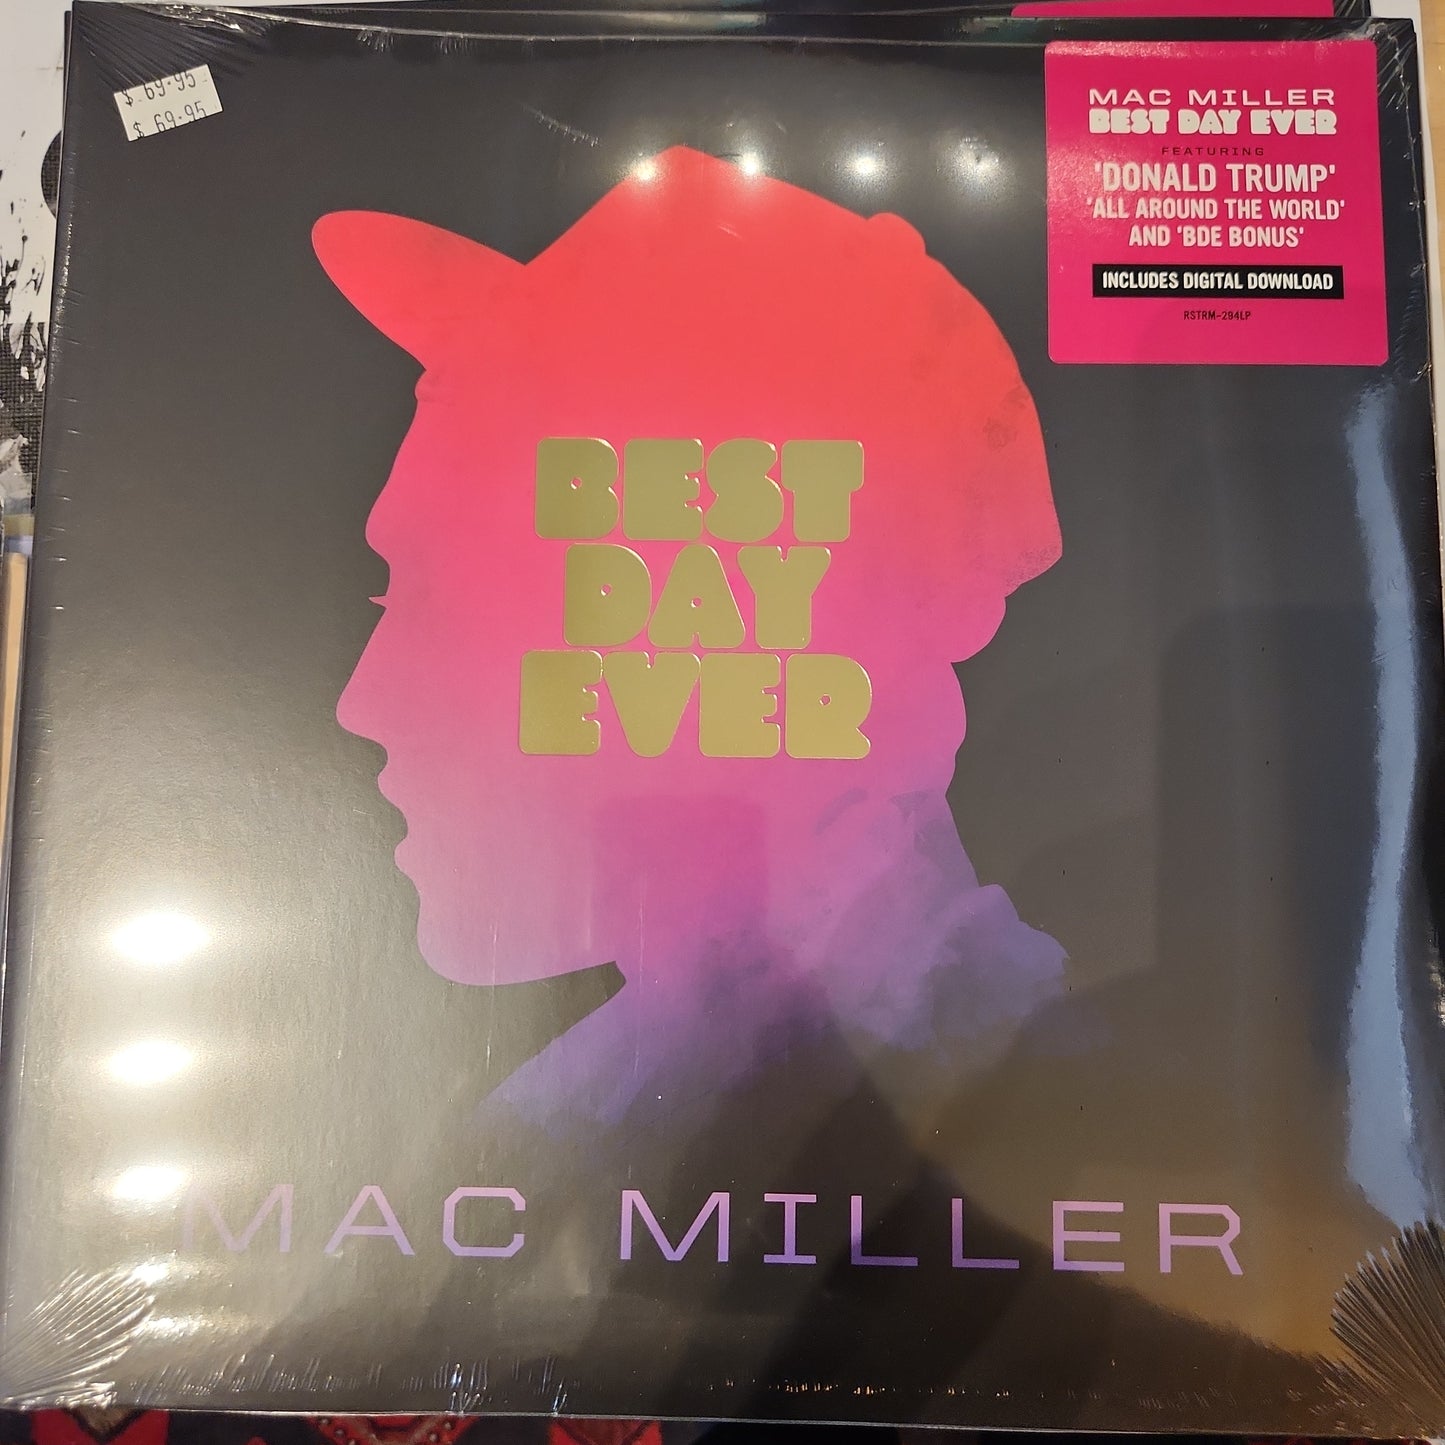 Mac Miller - Best Day Ever - Double Vinyl LP